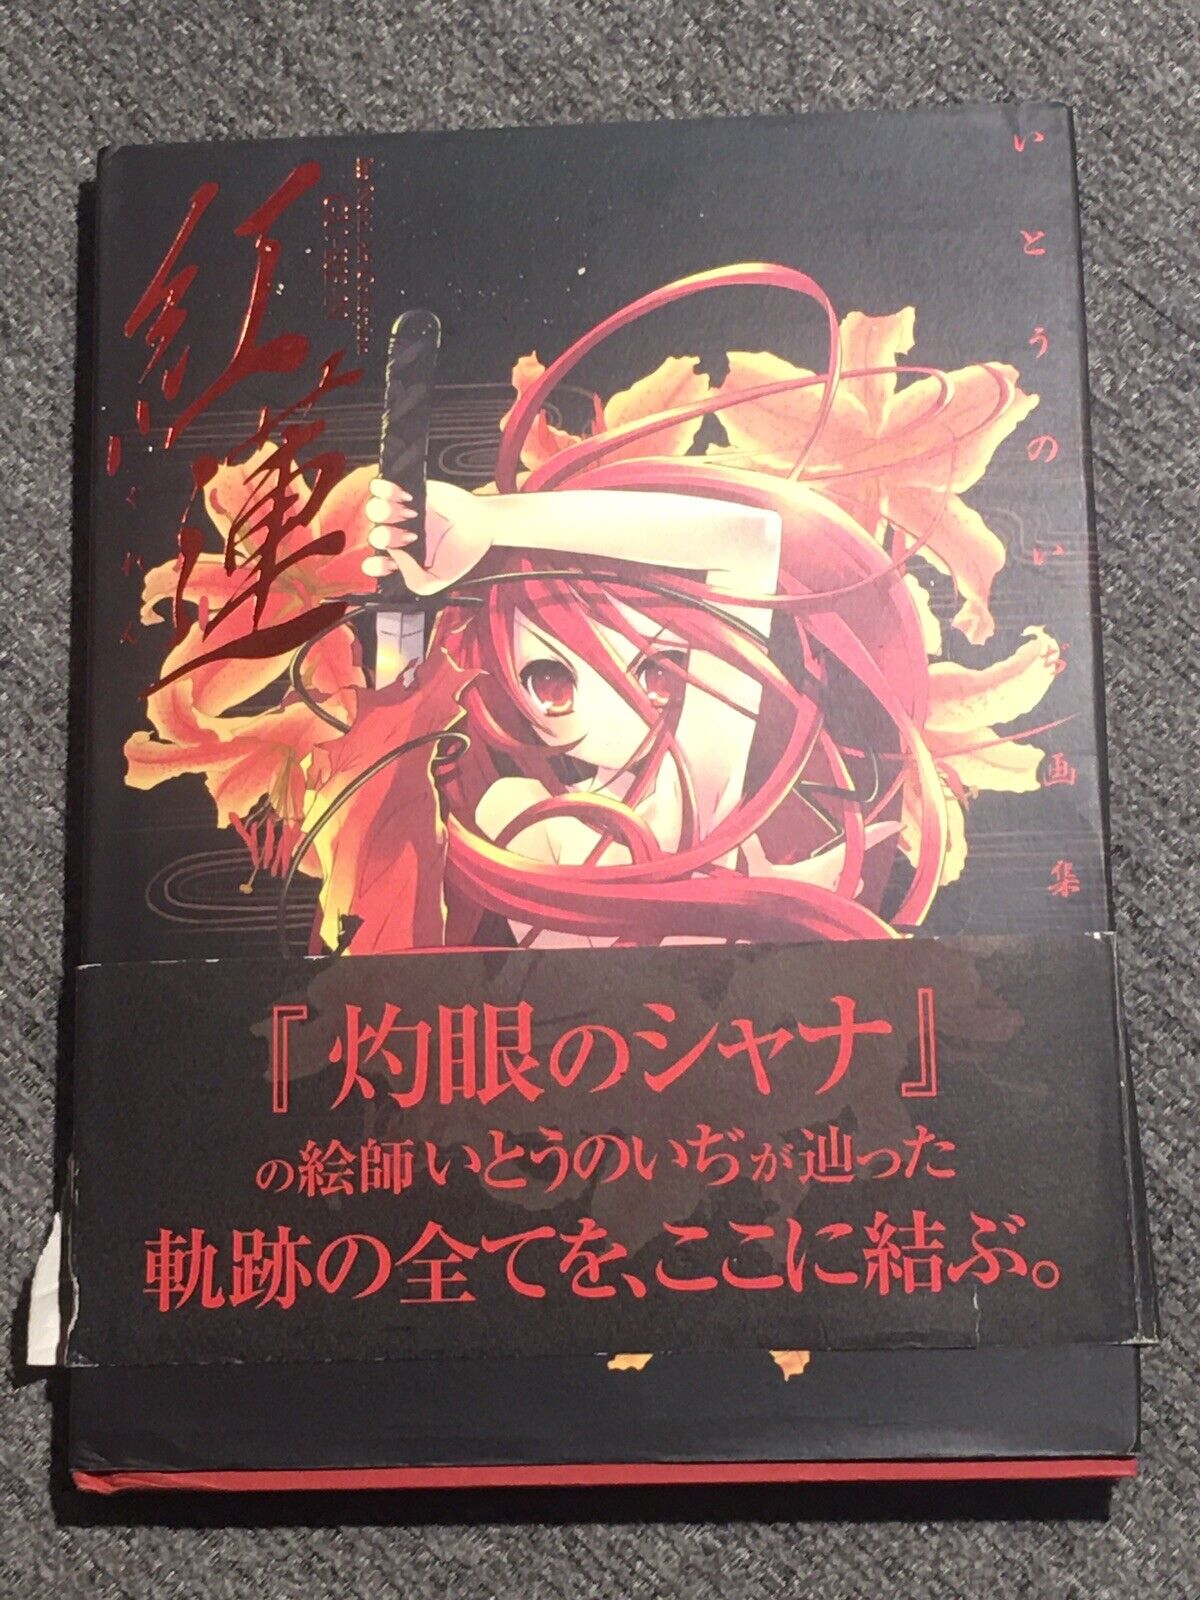 Artbook Shakugan no Shana Gu-Re-N Ito Noizi Art Collection hardcover